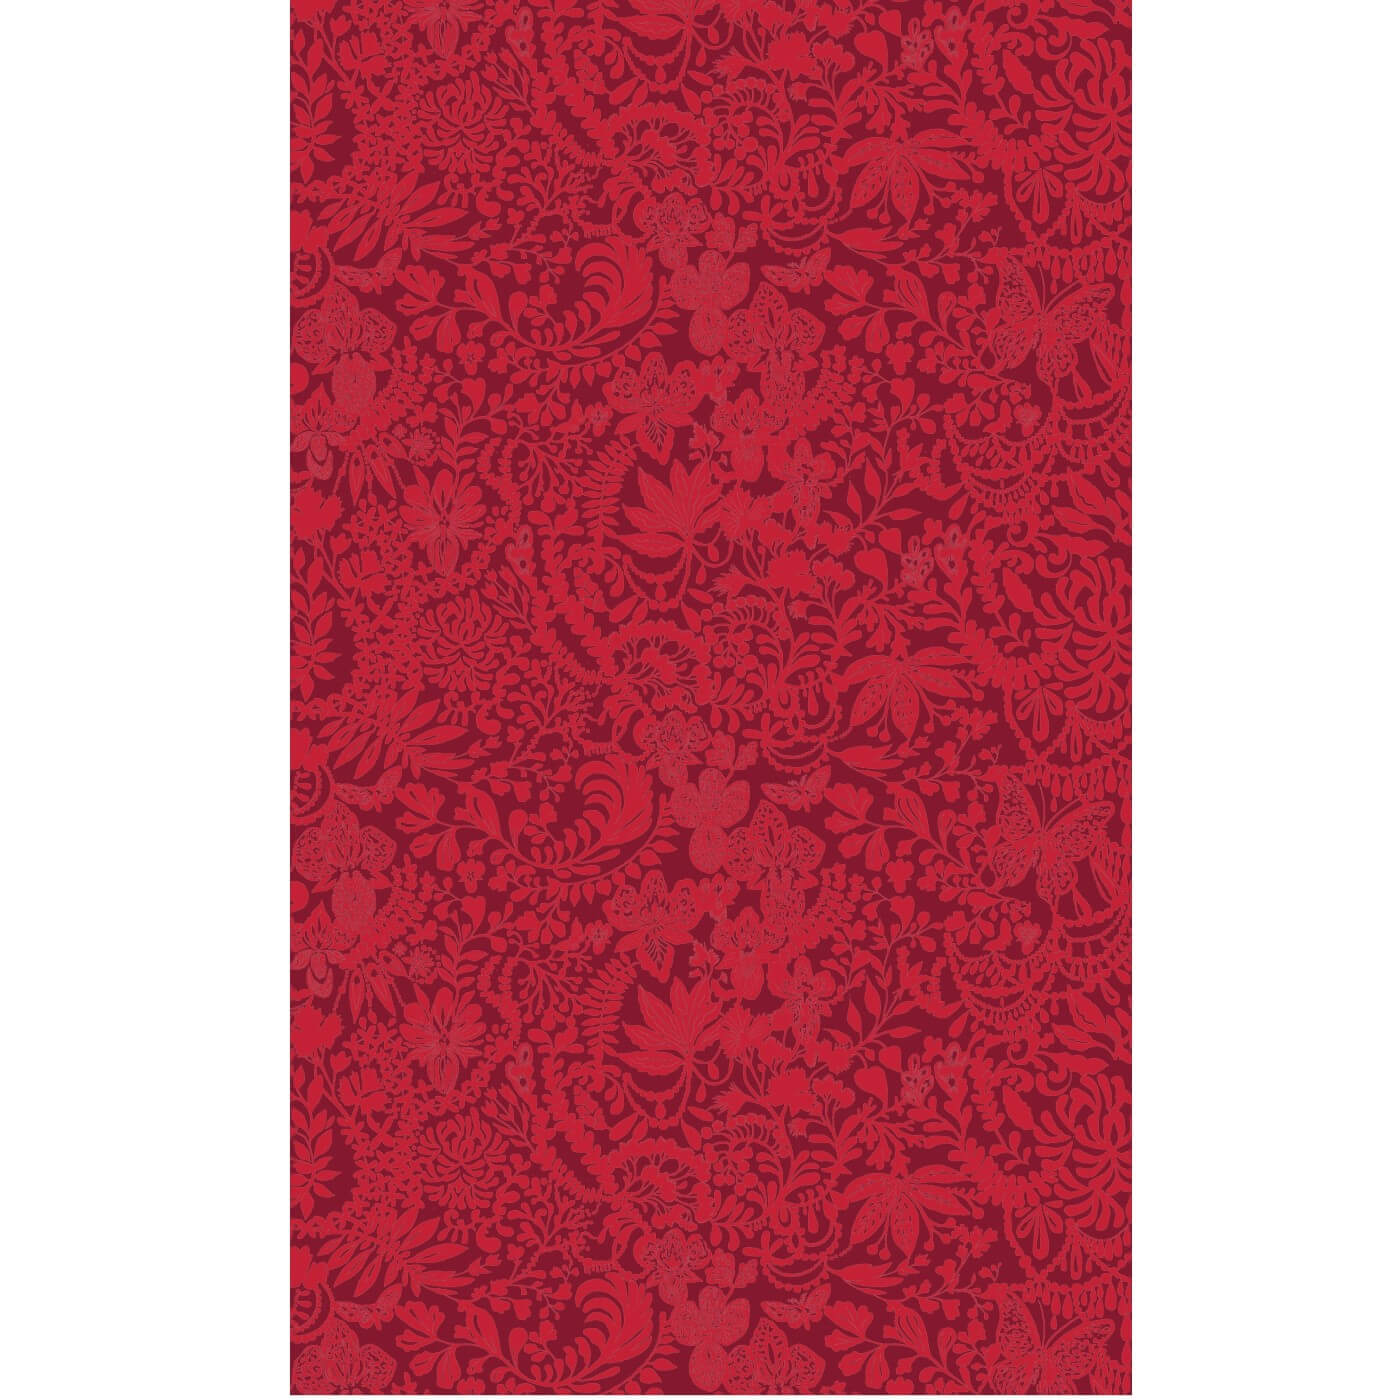 Subtelny wzór zasłony we wzory KRUMELUURI w kwiaty, liście, motyle w kolorze czerwonym